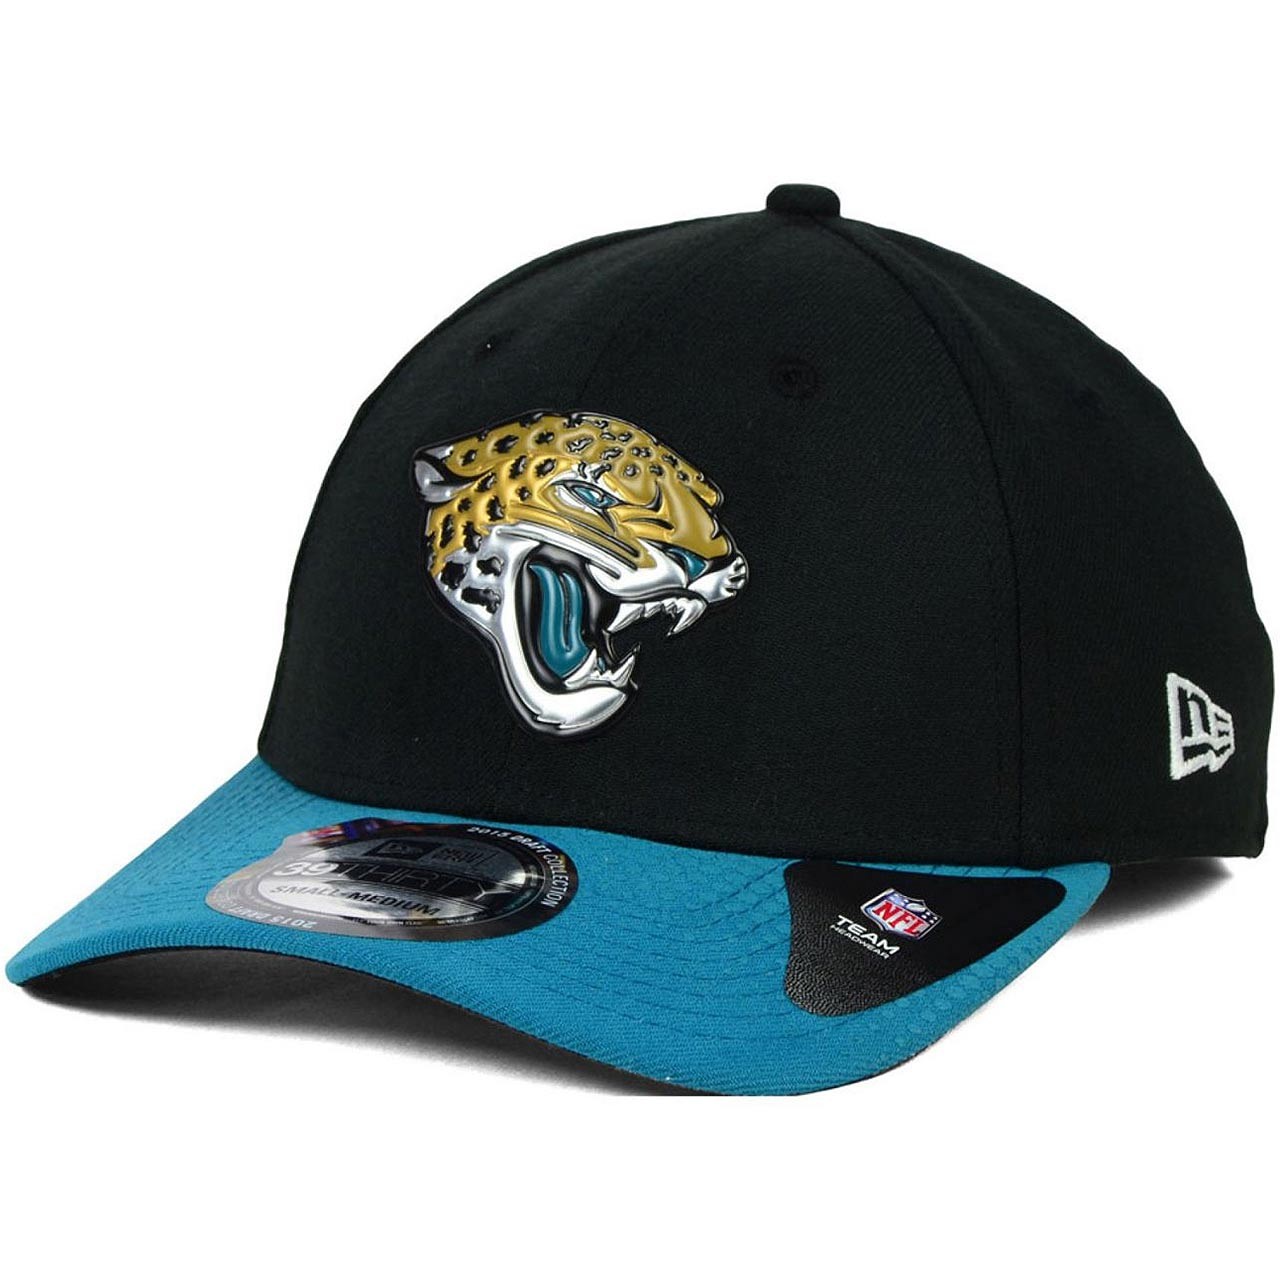 کلاه کپ نیو ارا مدل Nfl Jacksonville Jaguars